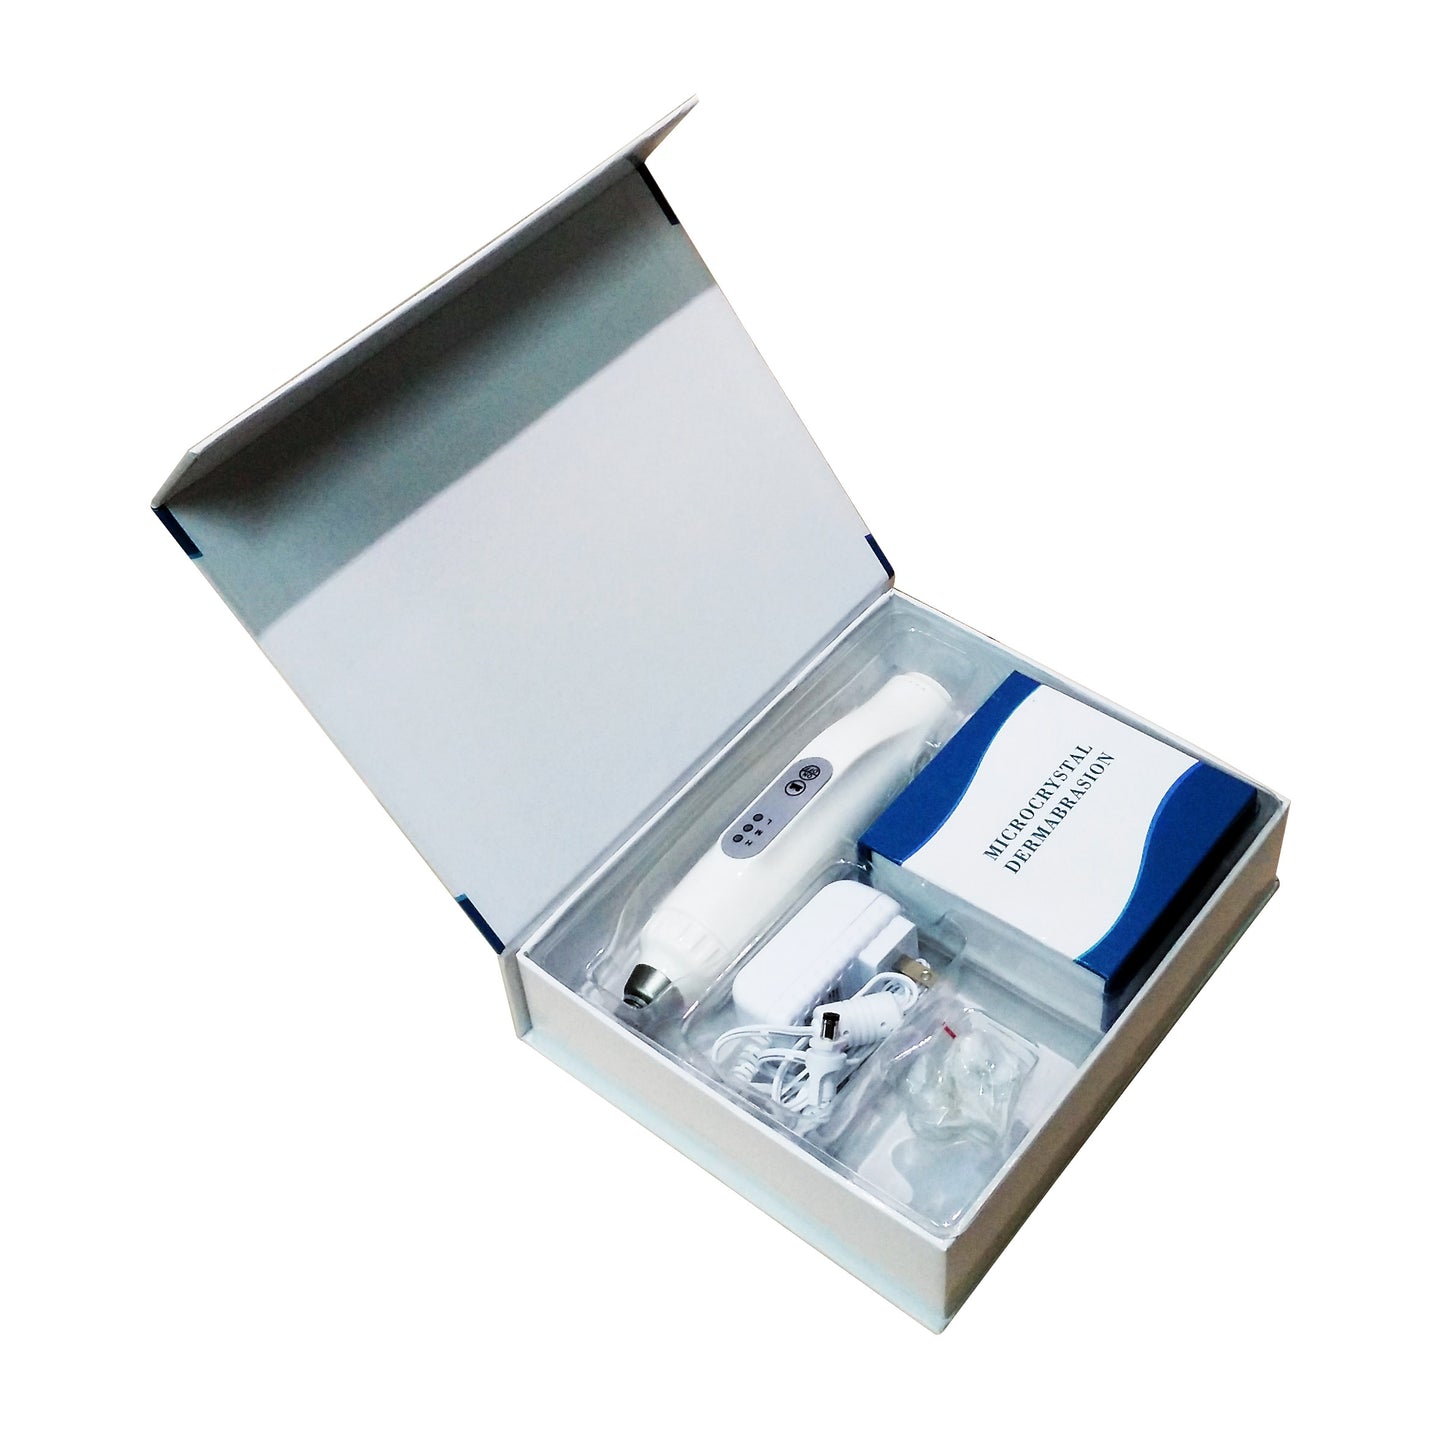 Sistema de microdermoabrasión Dispositivo de exfoliación de la piel facial en el hogar Dermoabrasión portátil